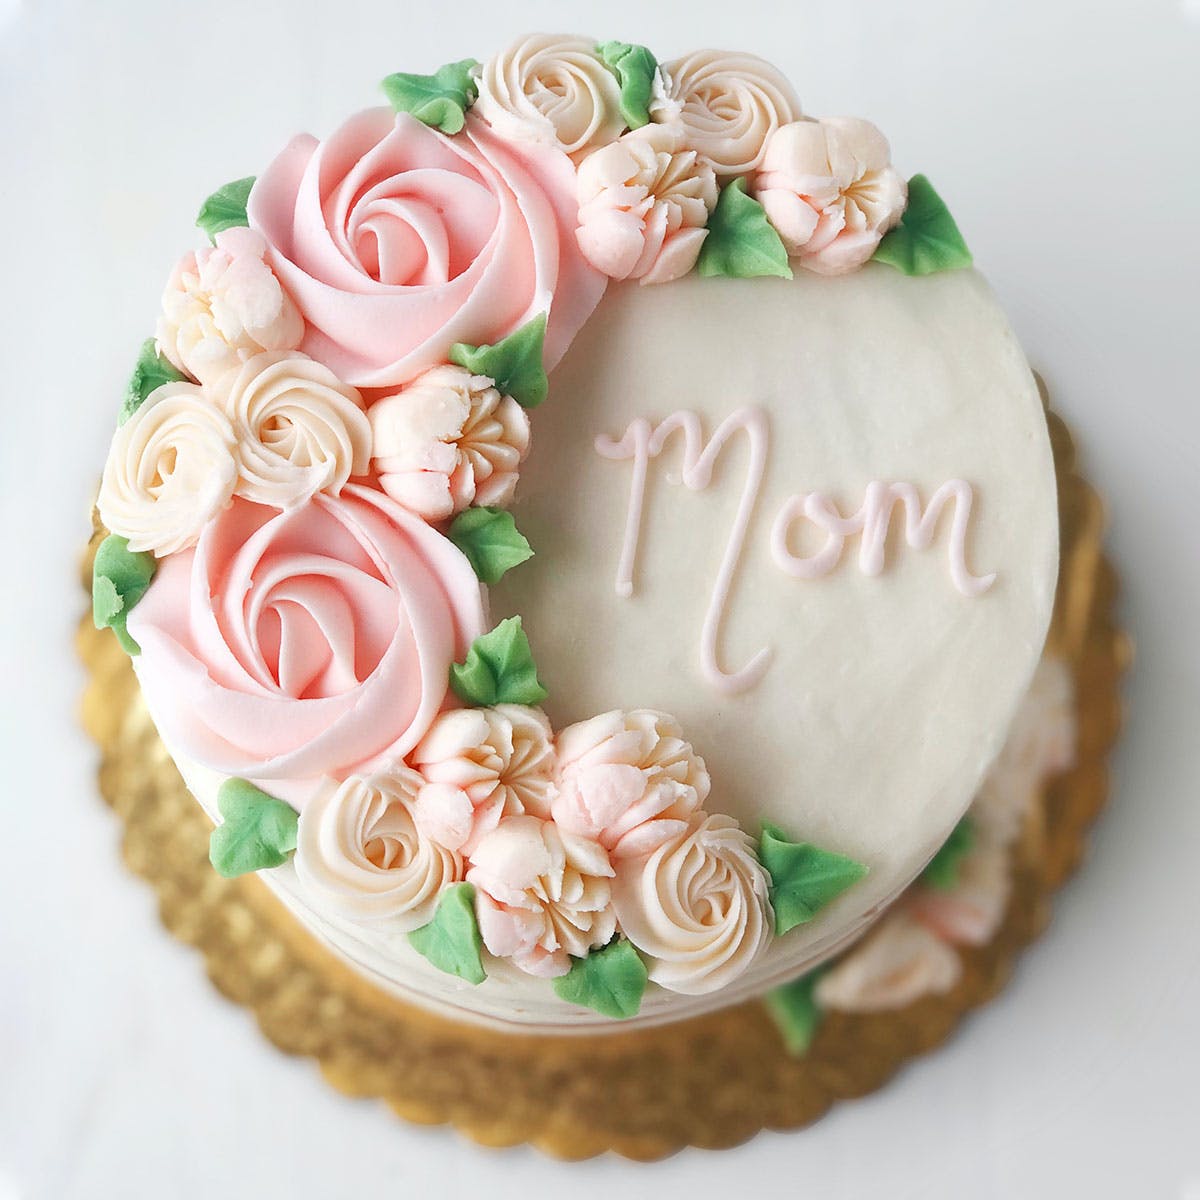 Mum's Cake